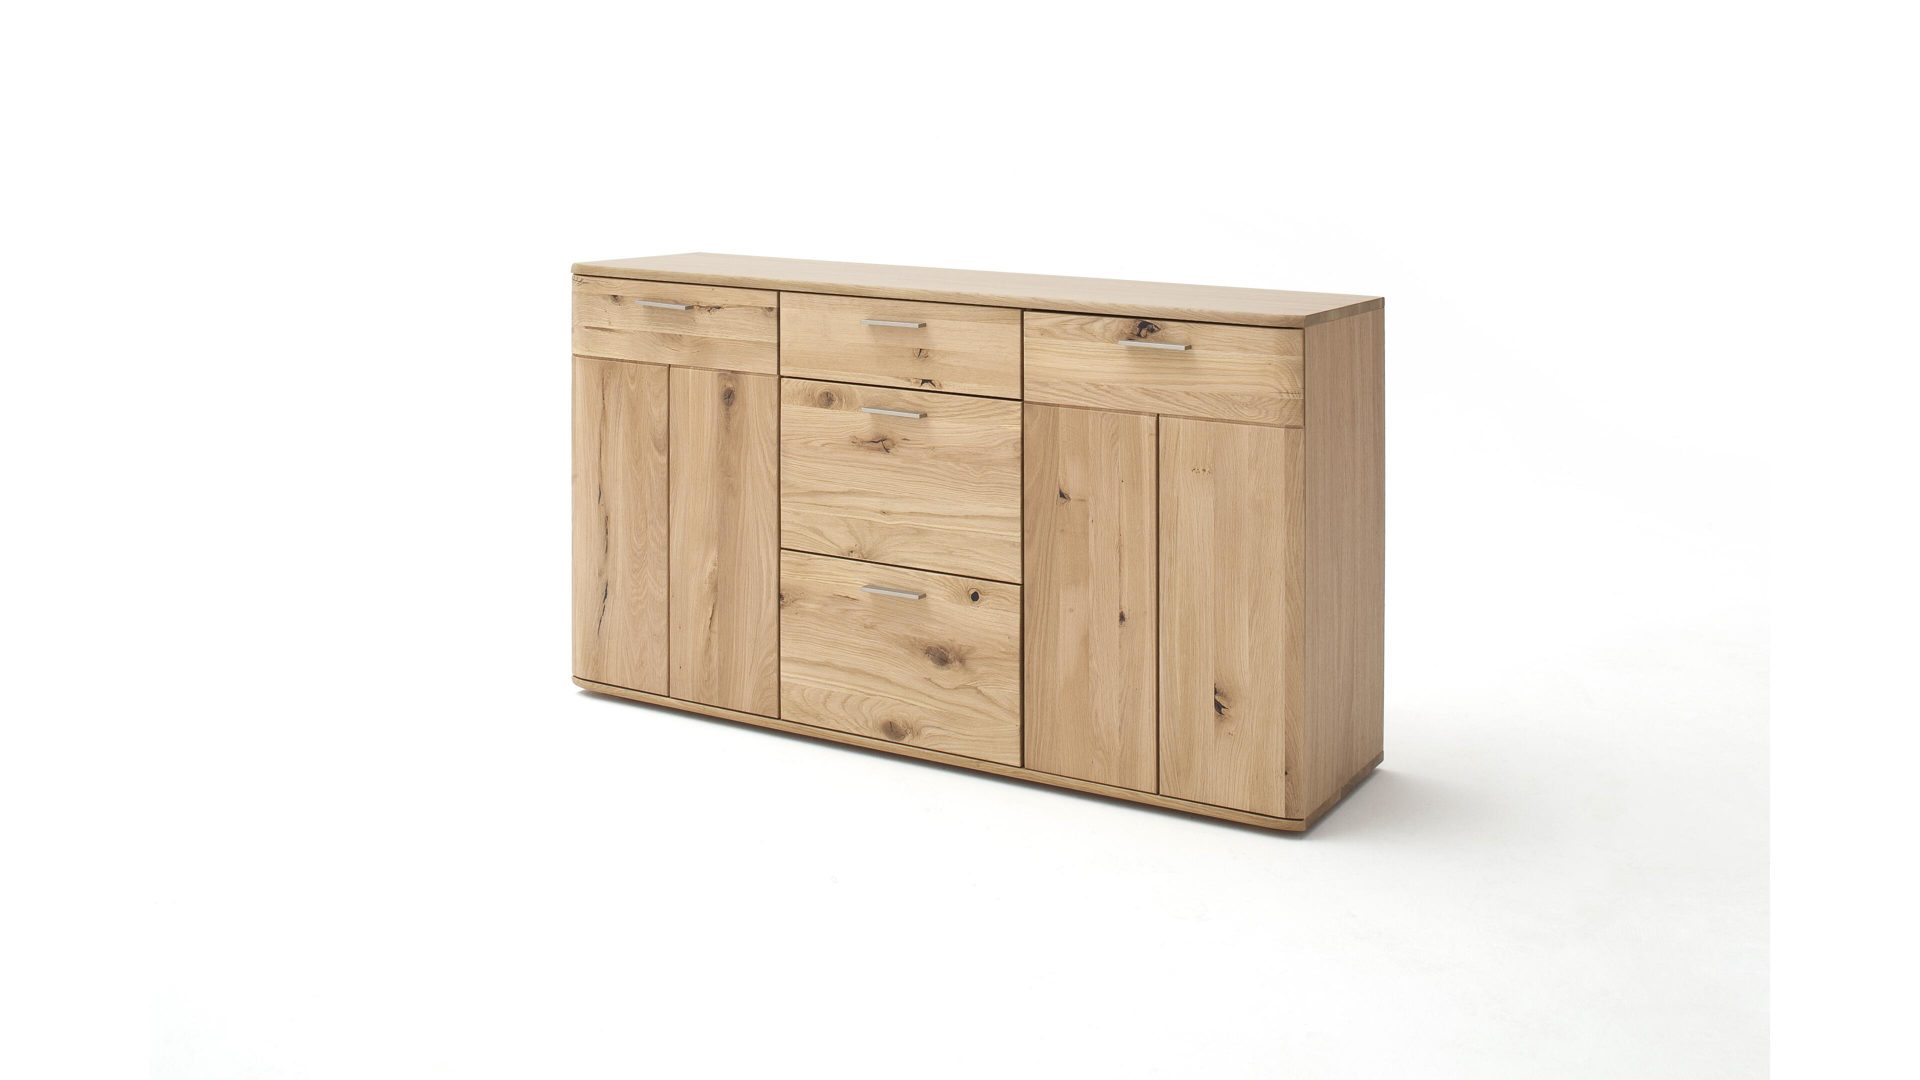 Kombikommode Mca furniture aus Holz in Holzfarben Kombikommode biancofarbene Balkeneiche – zwei Türen, drei Schubladen